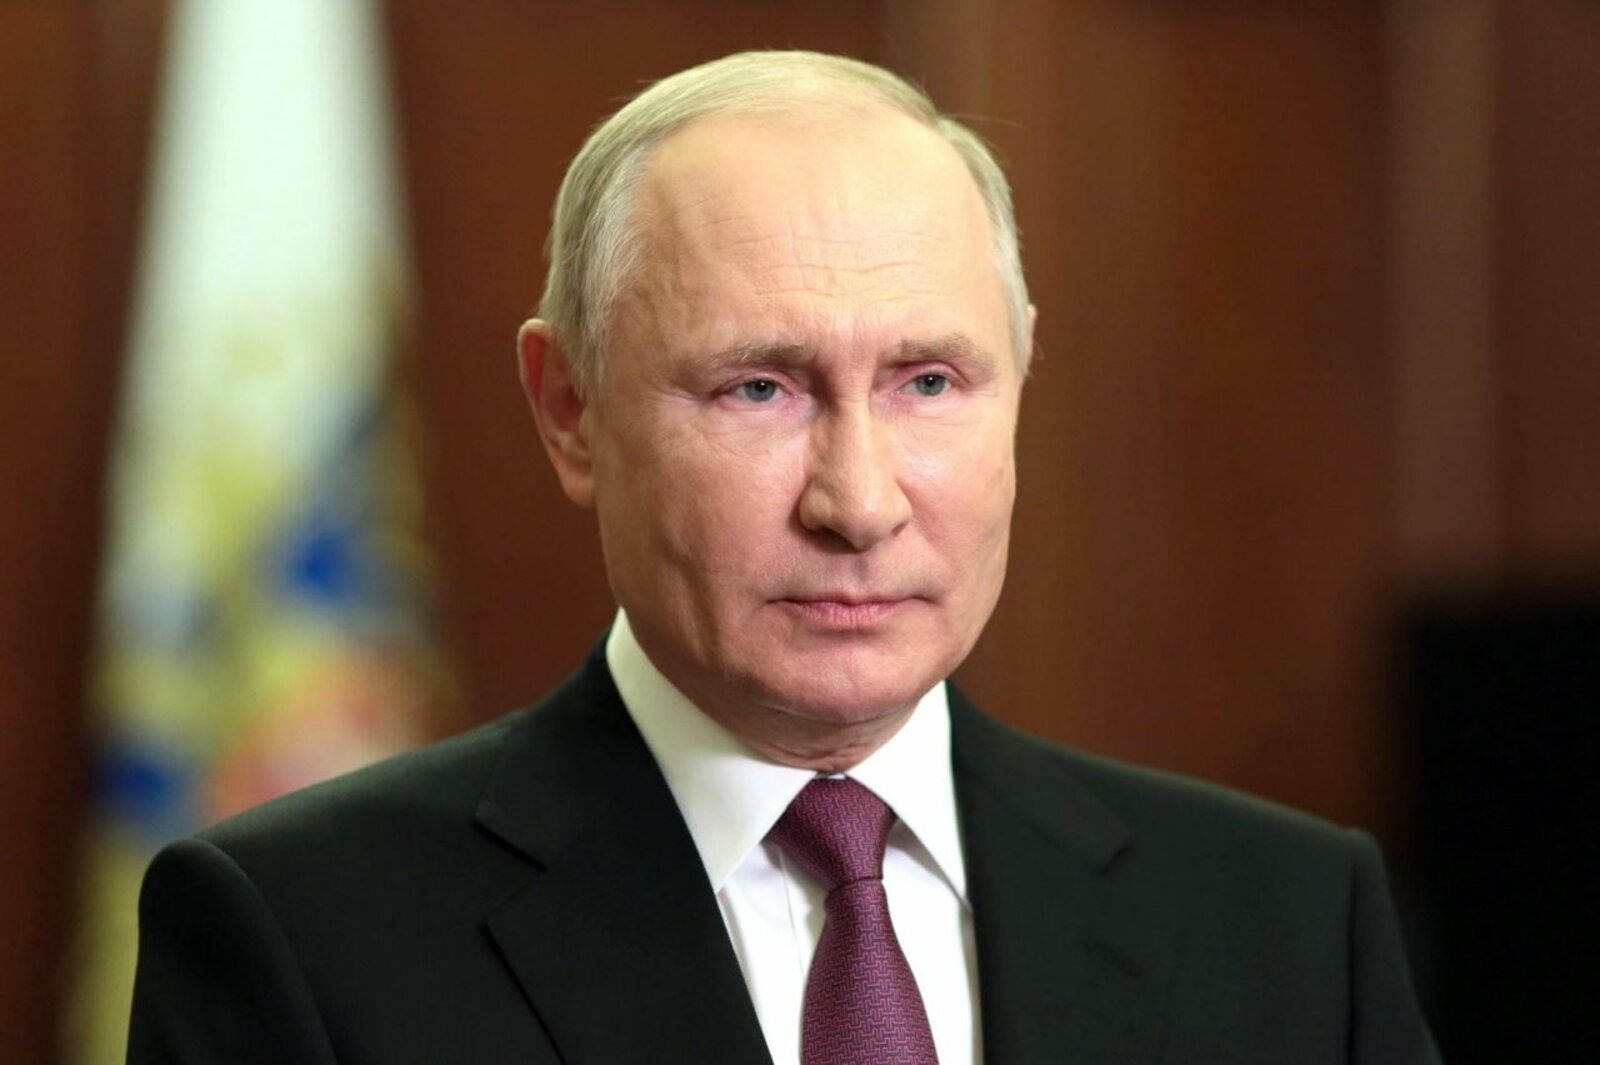 Инаугурация Владимира Путина состоится 7 мая